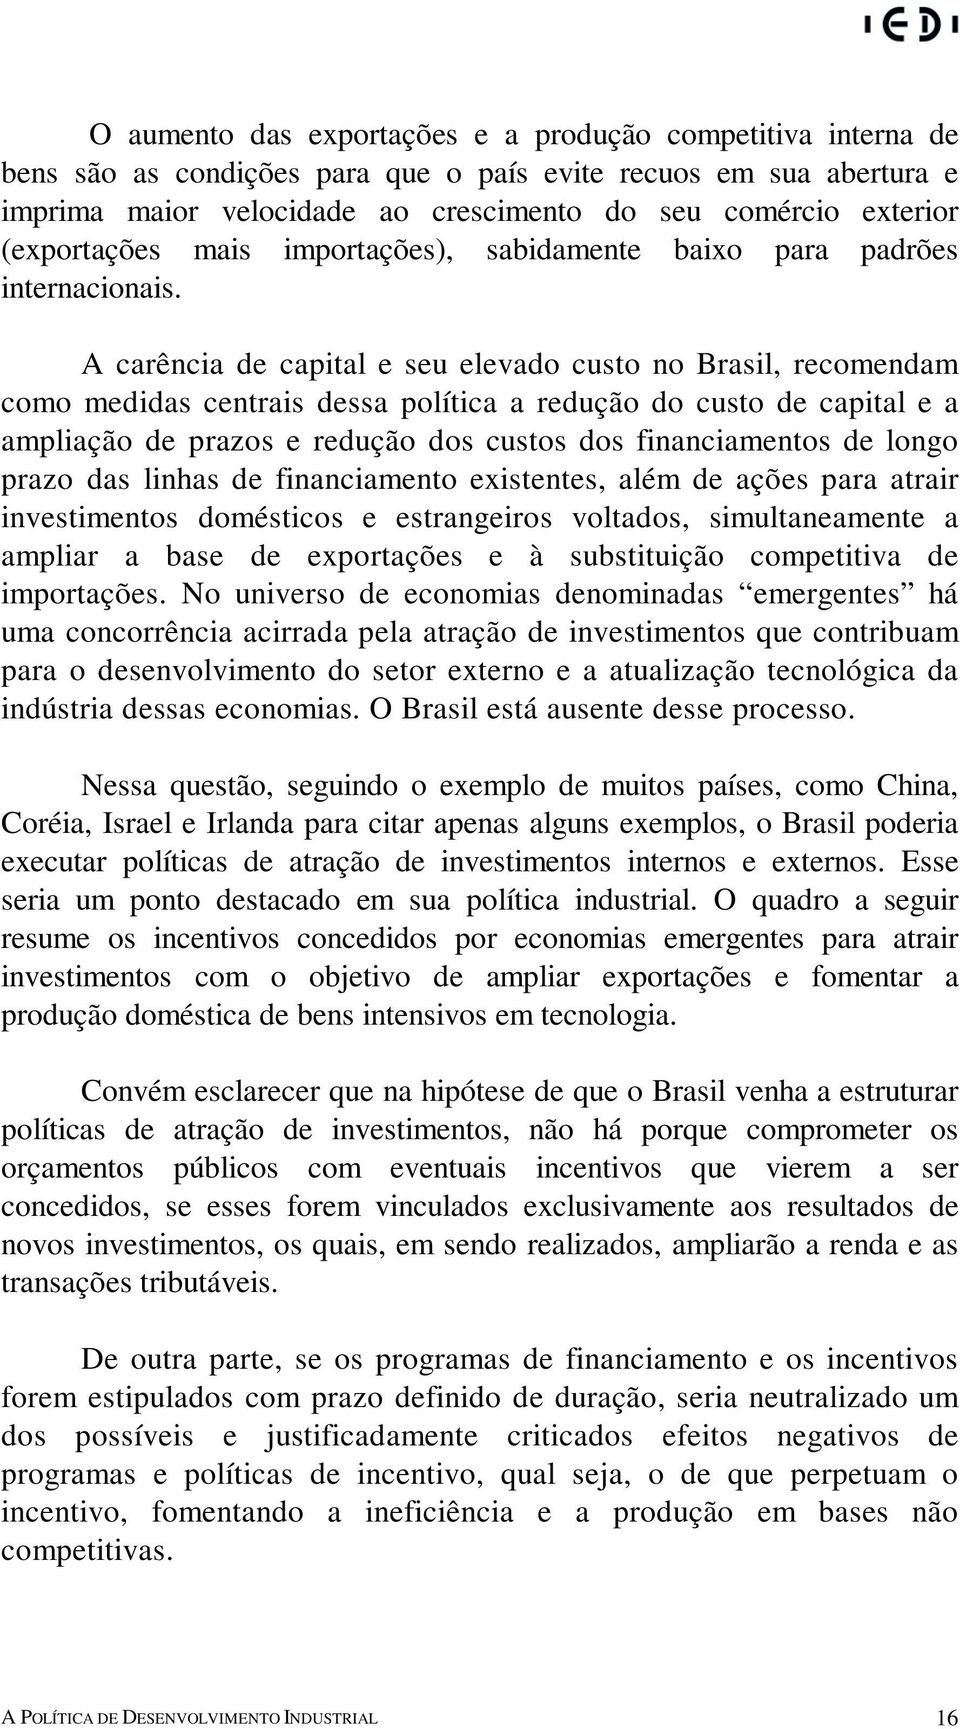 A carência de capital e seu elevado custo no Brasil, recomendam como medidas centrais dessa política a redução do custo de capital e a ampliação de prazos e redução dos custos dos financiamentos de